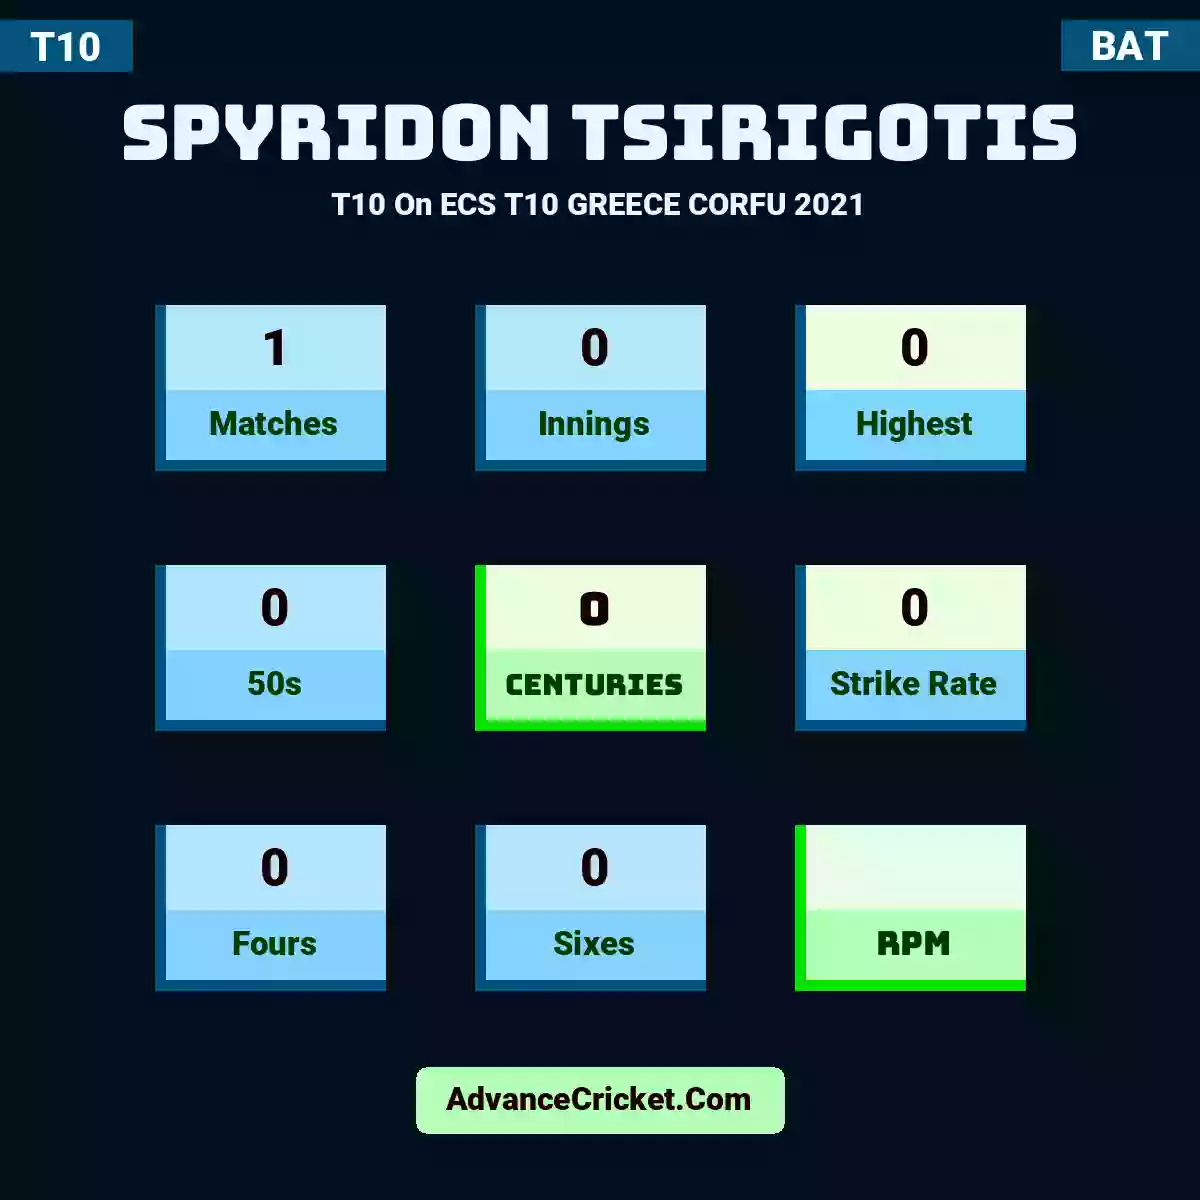 Spyridon Tsirigotis T10  On ECS T10 GREECE CORFU 2021, Spyridon Tsirigotis played 1 matches, scored 0 runs as highest, 0 half-centuries, and 0 centuries, with a strike rate of 0. S.Tsirigotis hit 0 fours and 0 sixes.